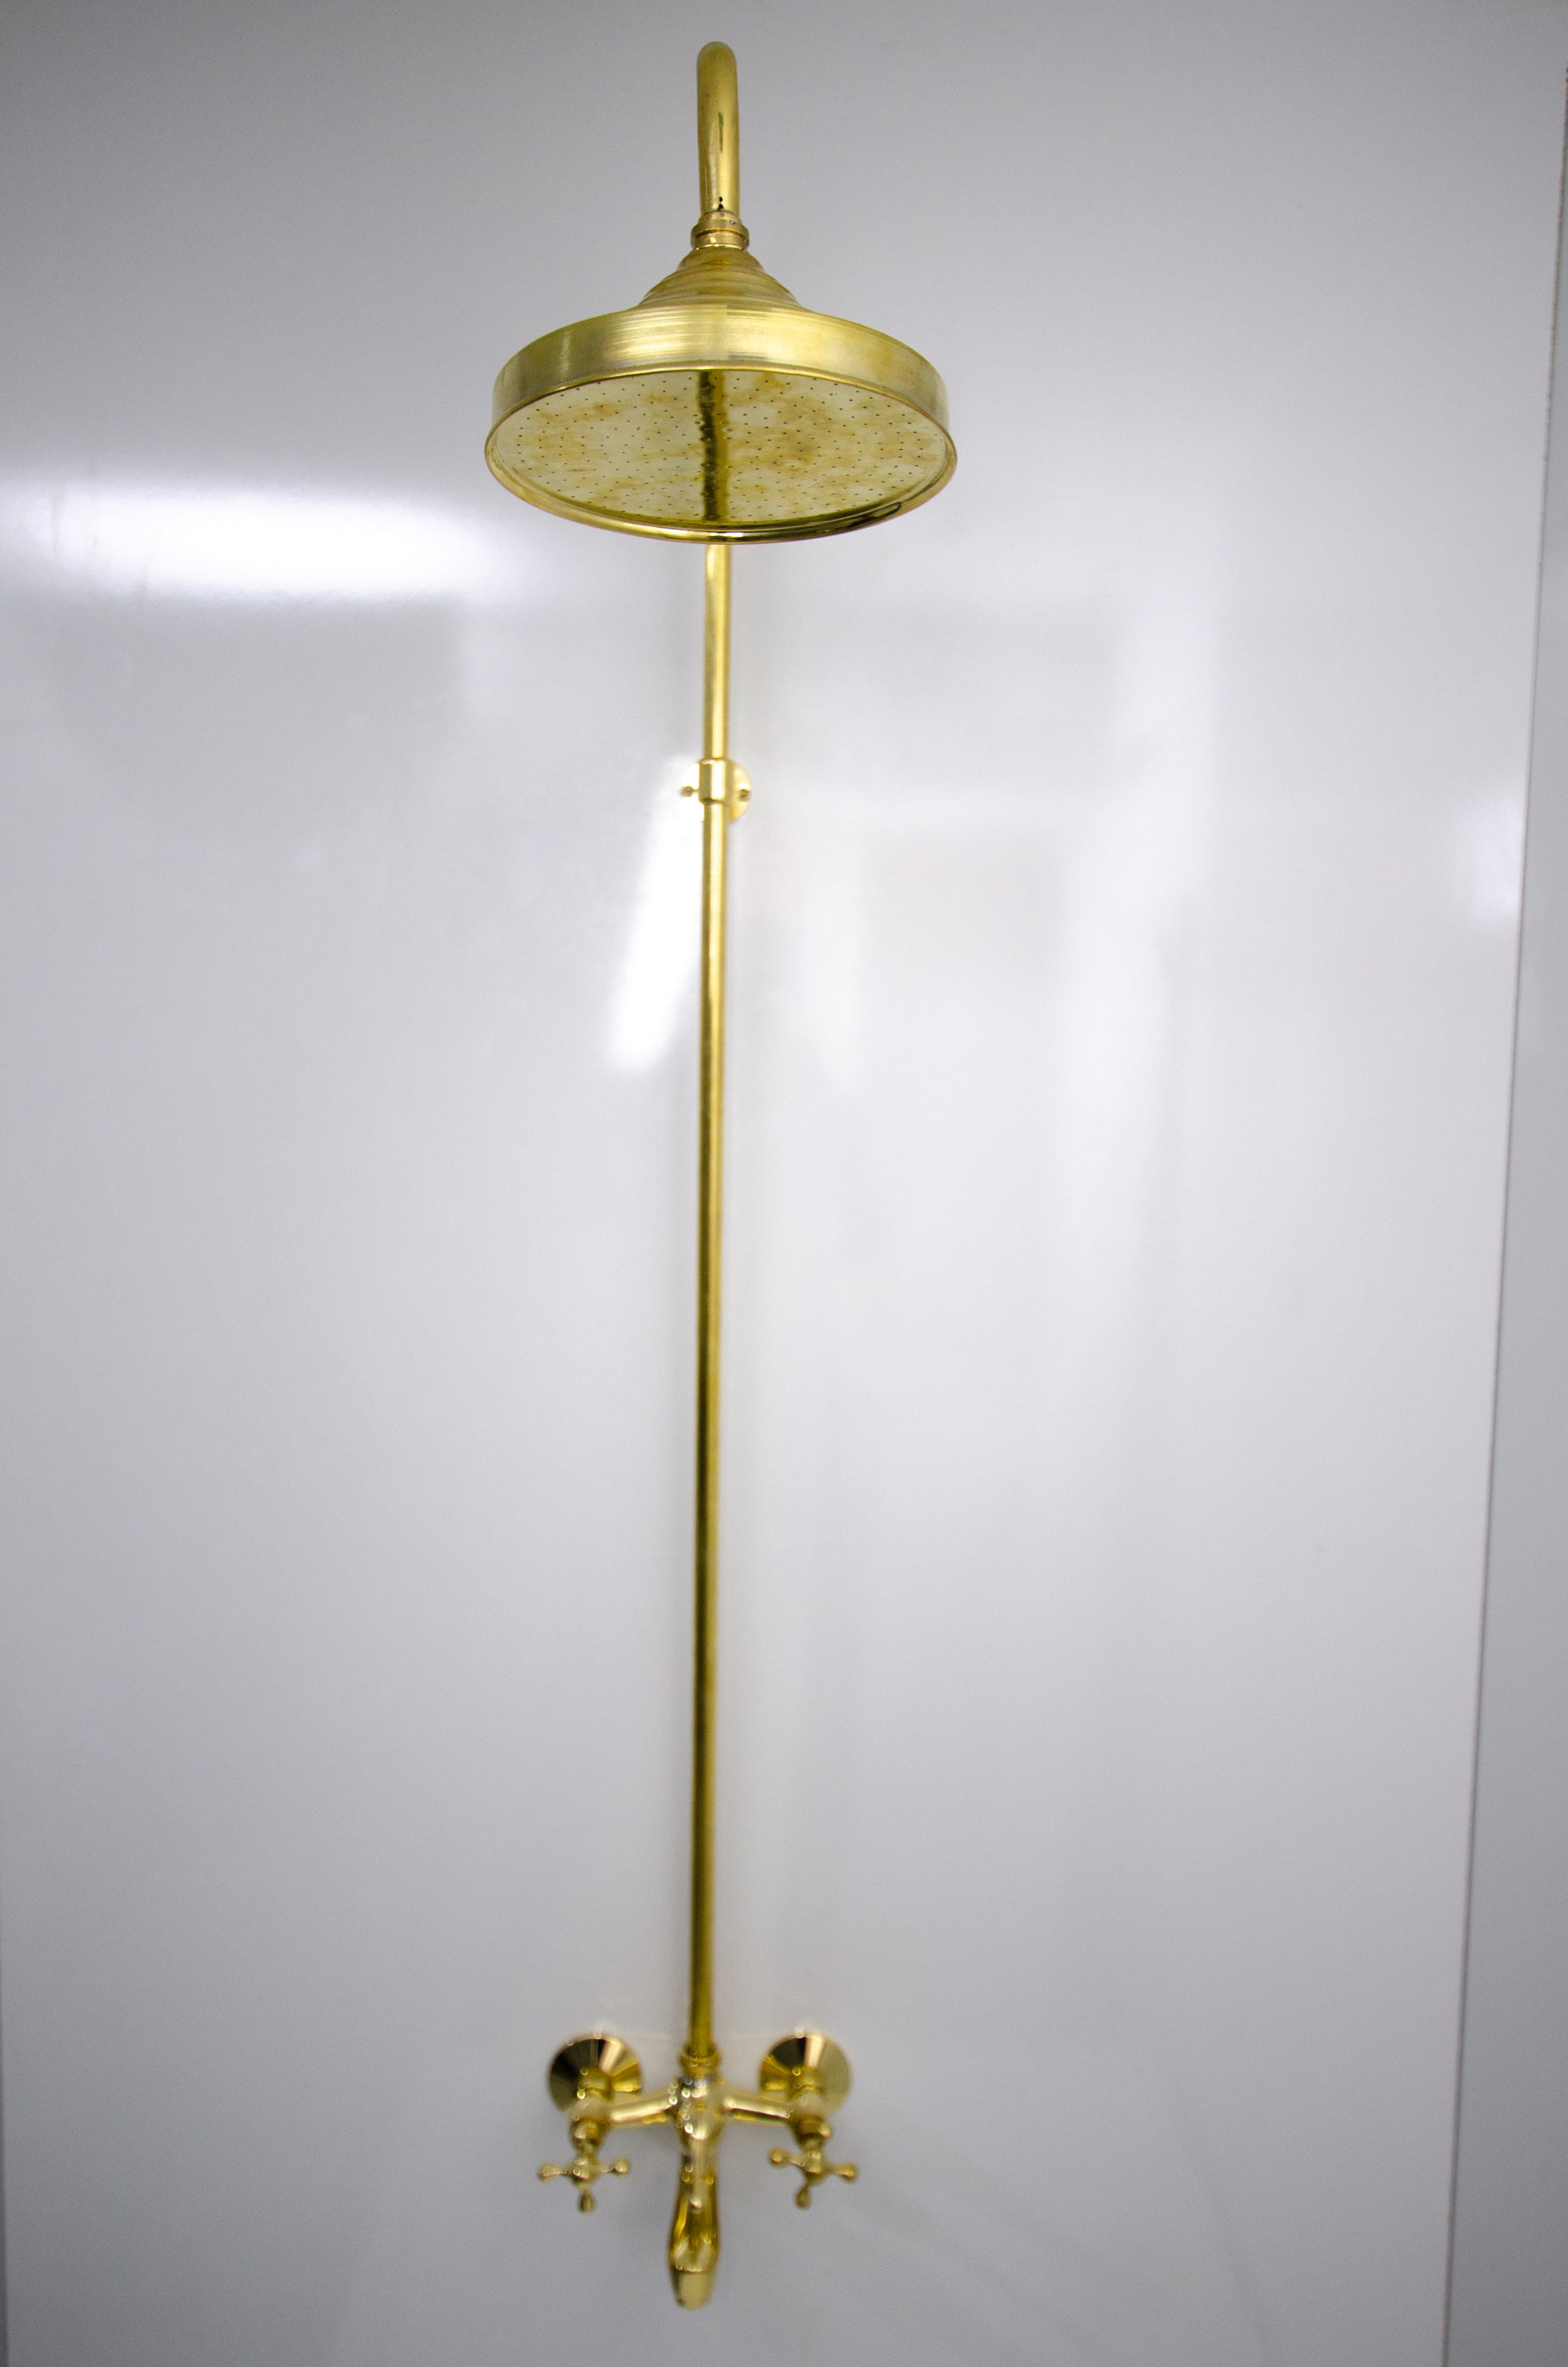 brass shower system